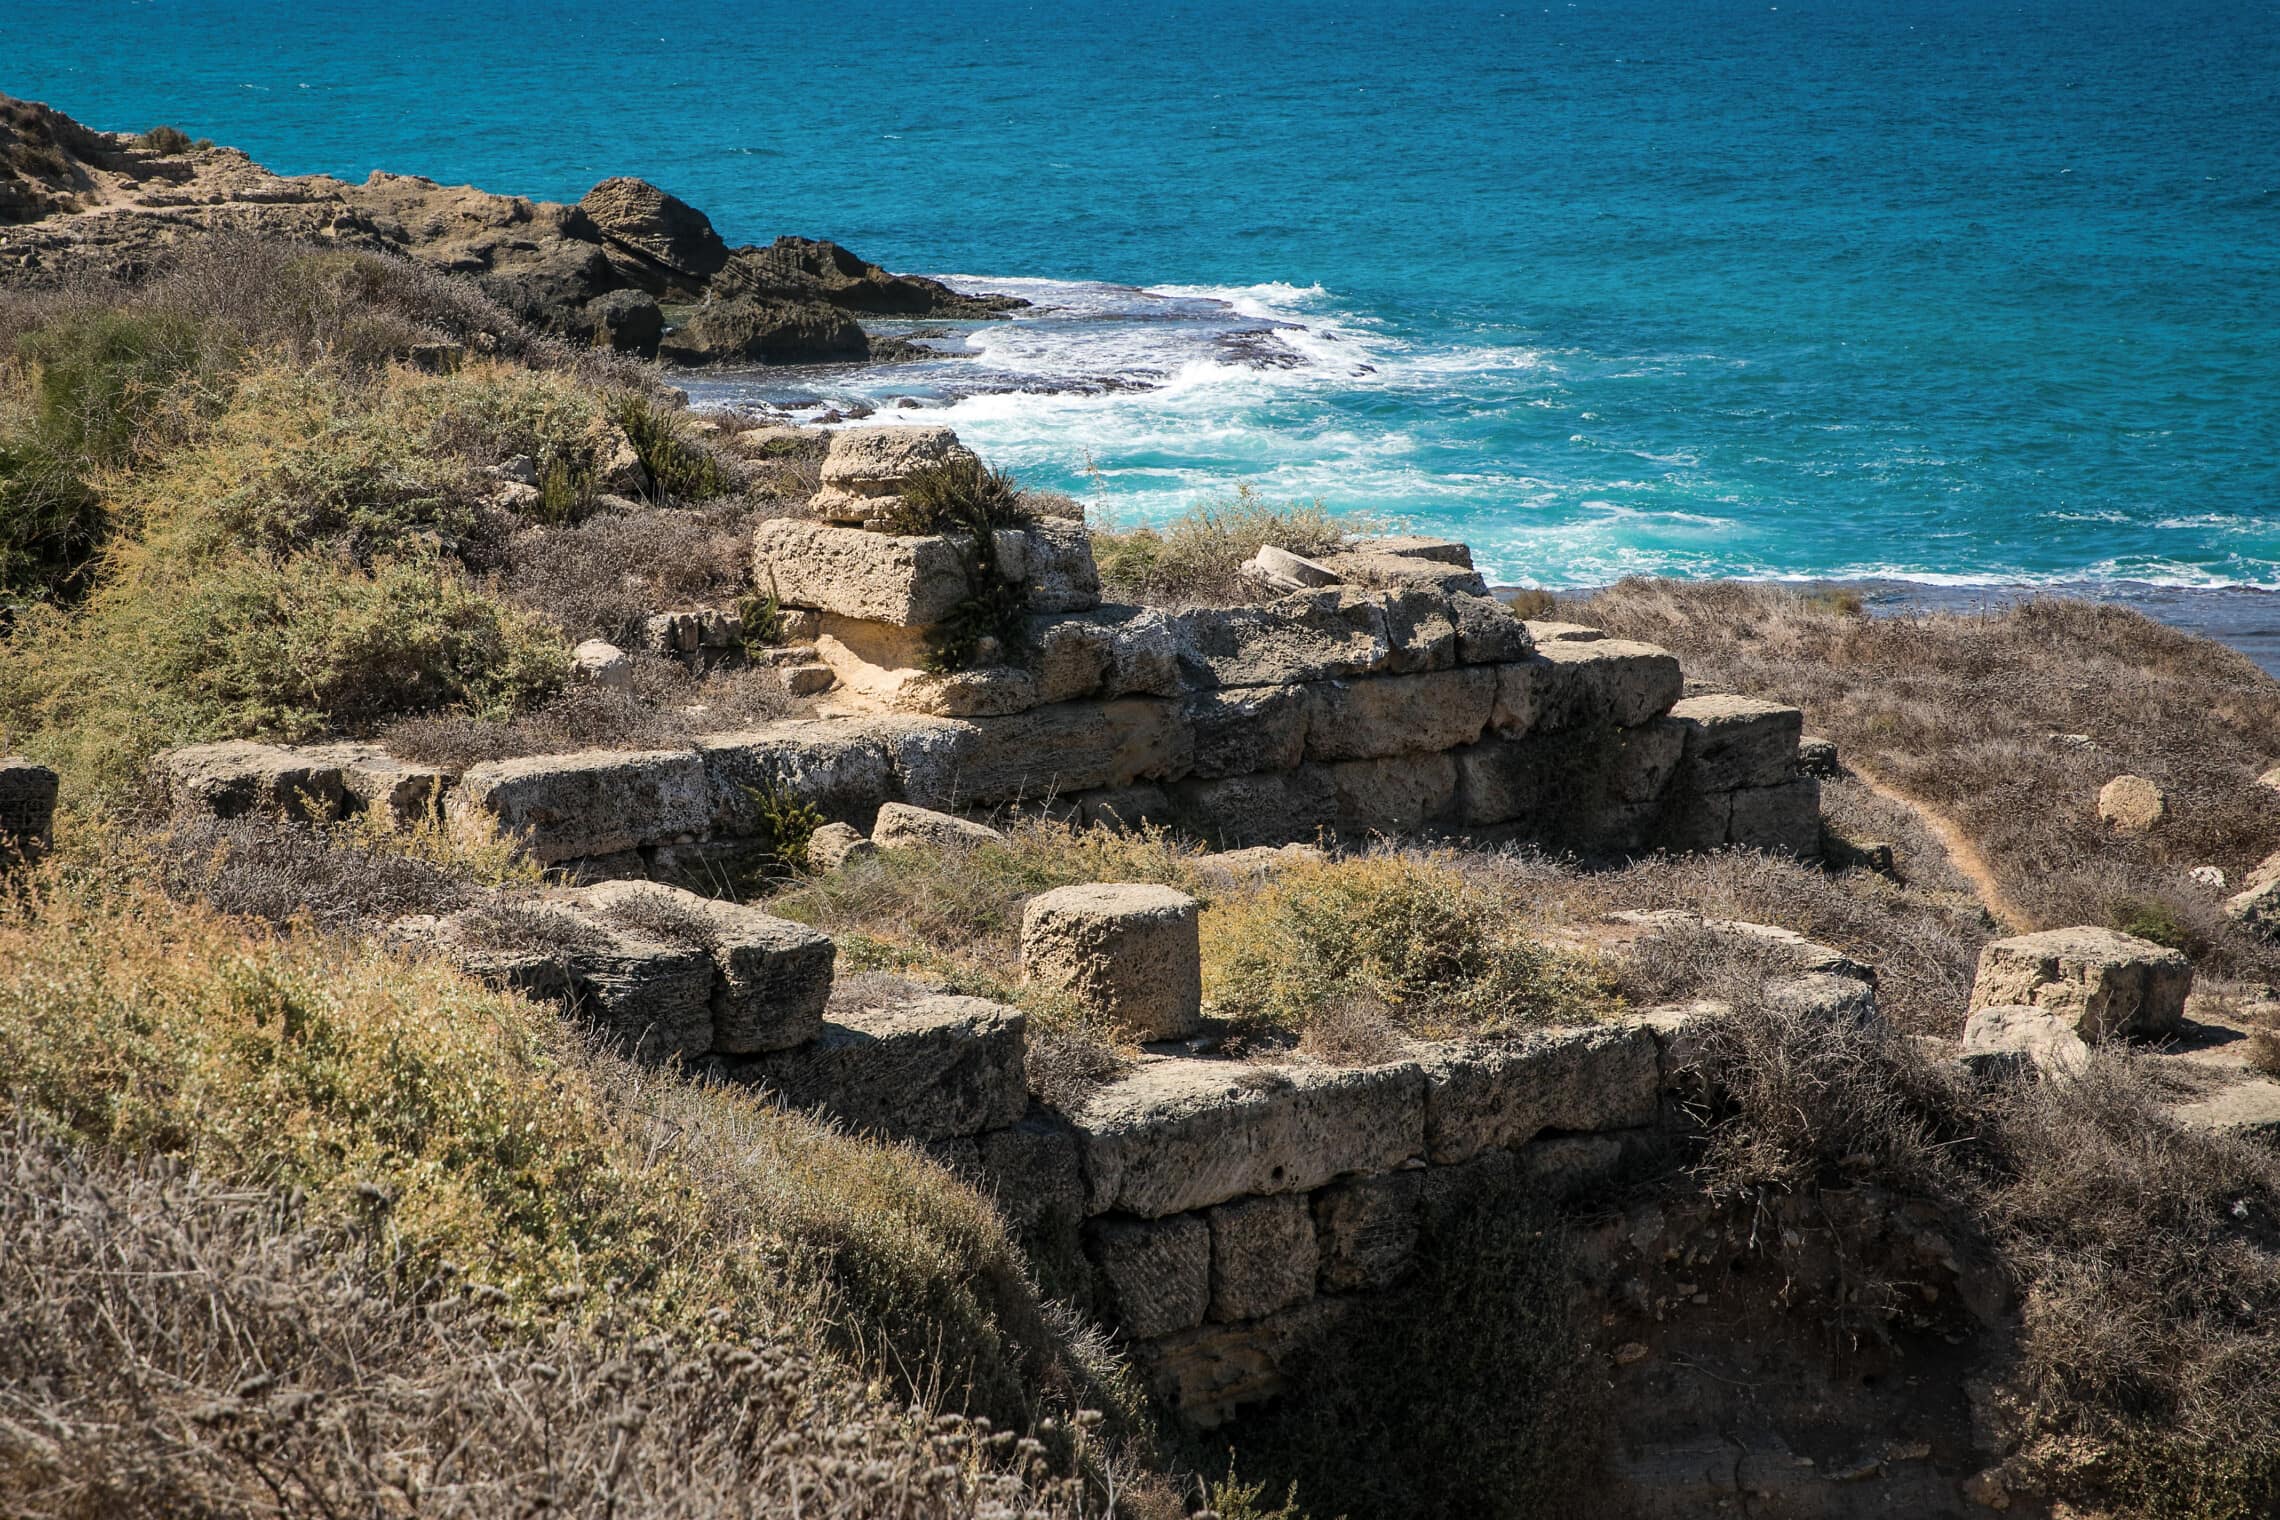 מבט על הממצאים הארכאולוגיים בחוף דור, 23 בספטמבר 2019 (צילום: Anat Hermony/Flash90)